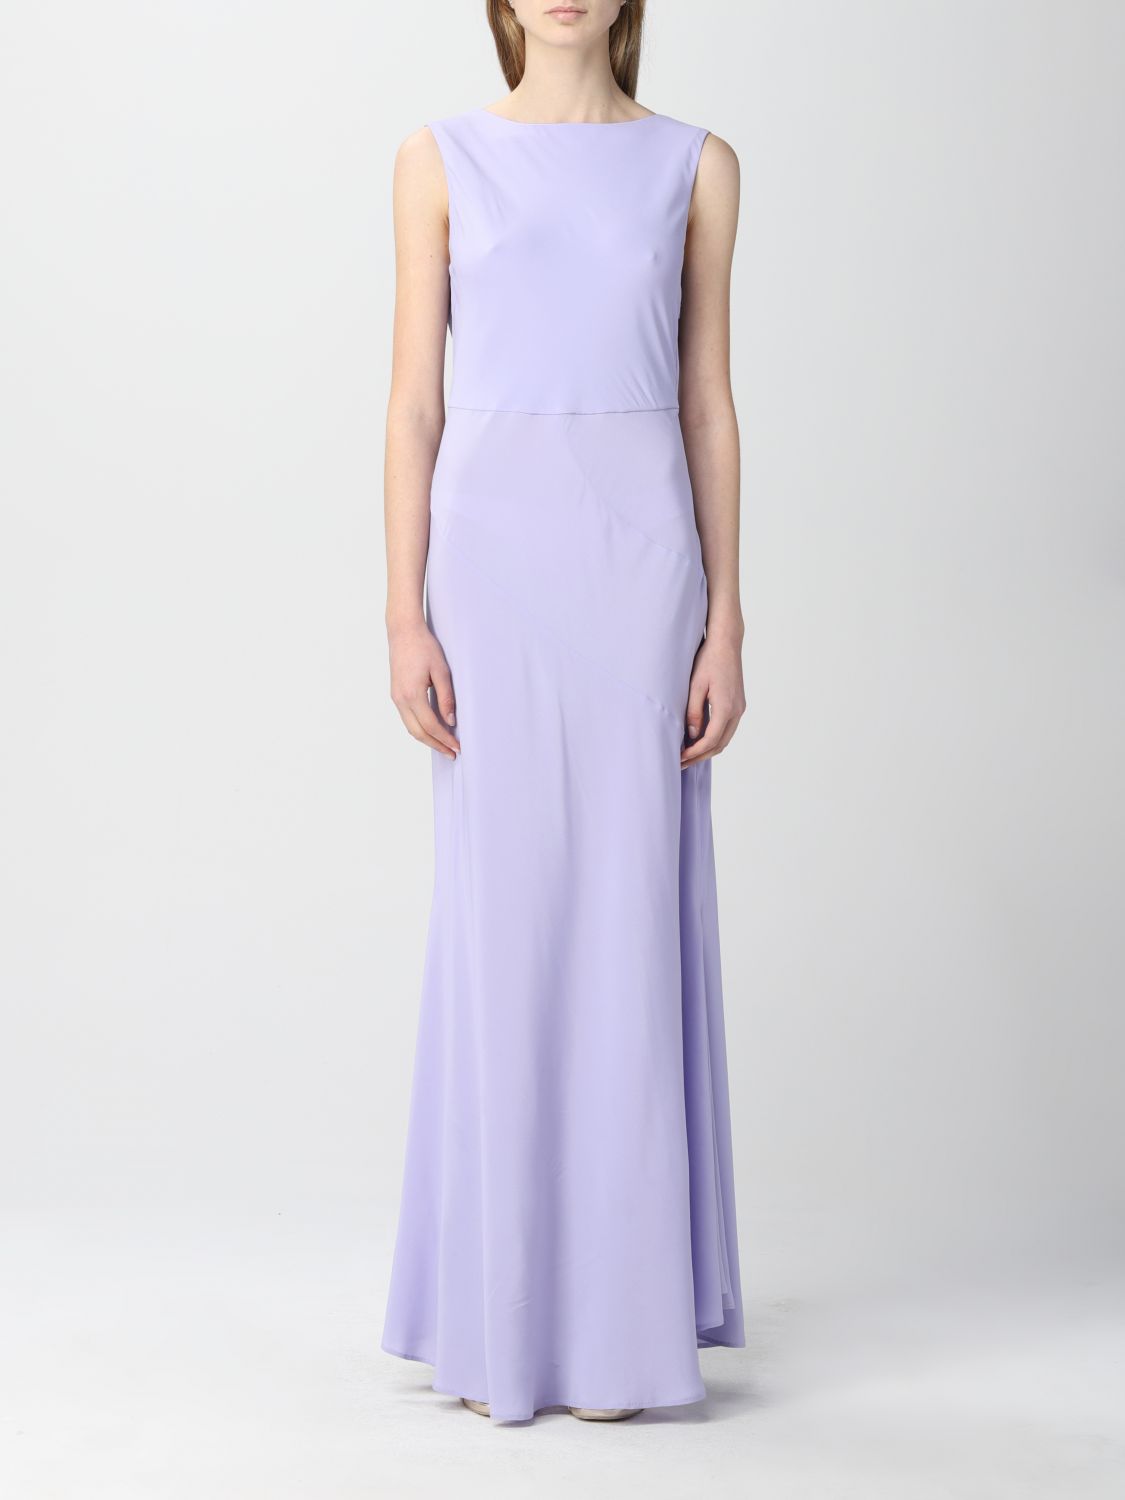 Erika Cavallini Outlet: dress for woman - Violet | Erika Cavallini ...